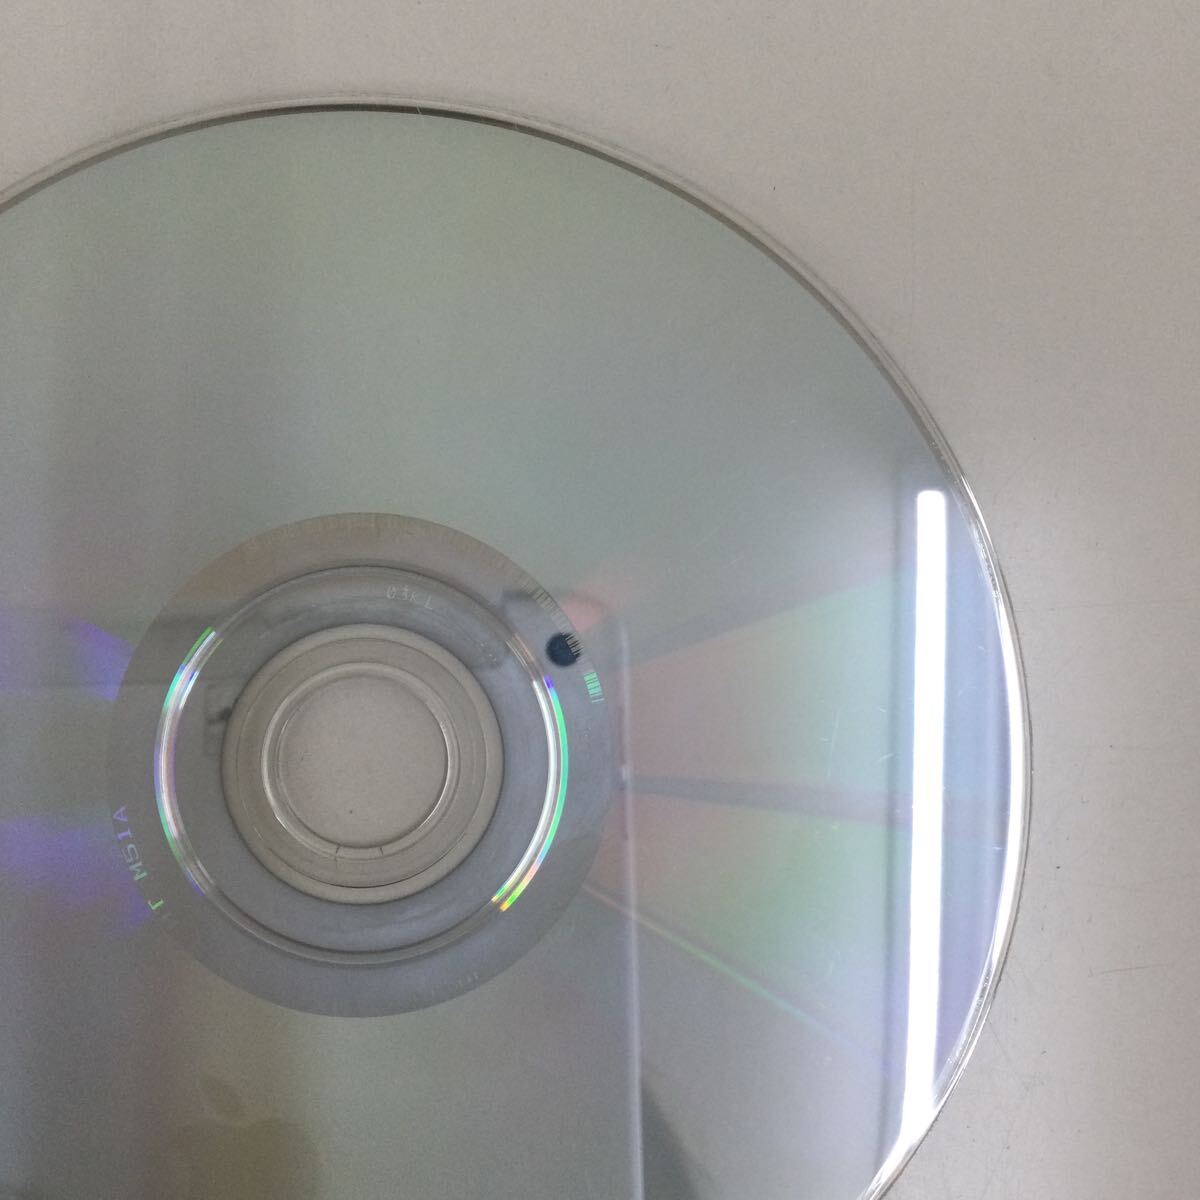 0331 レディ・ゴー 全4巻セット レンタル落ち DVD 中古品 ケースなし ジャケット付き Disc4の中央部分に割れありますの画像3